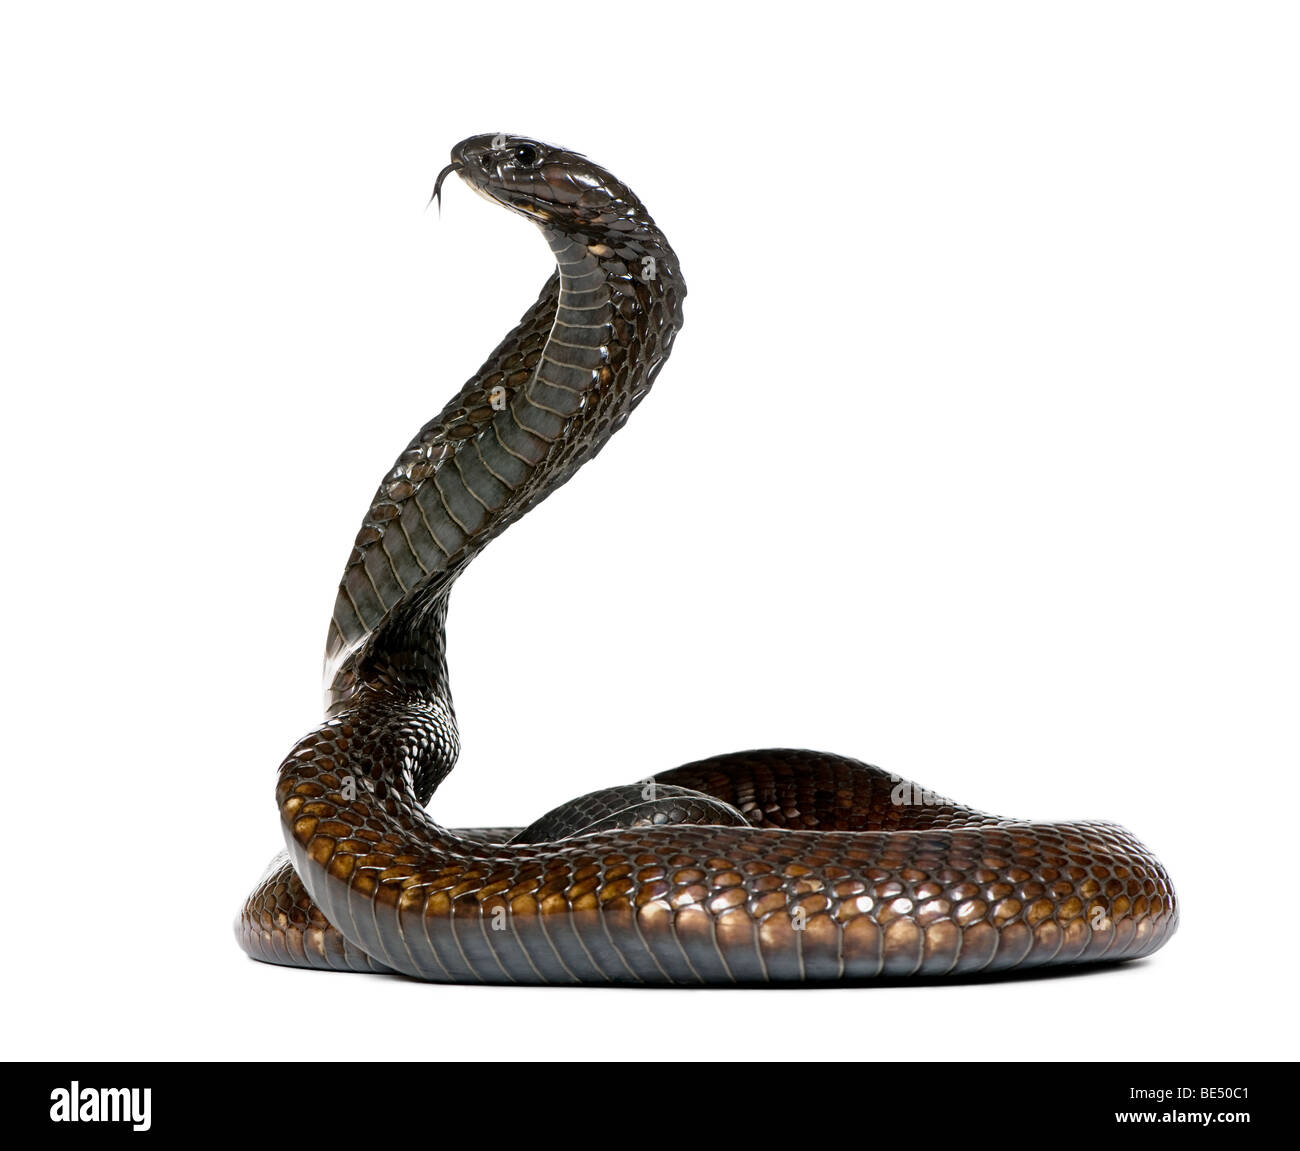 La Cobra egipcia, Naja Haje, contra un fondo blanco, Foto de estudio Foto de stock